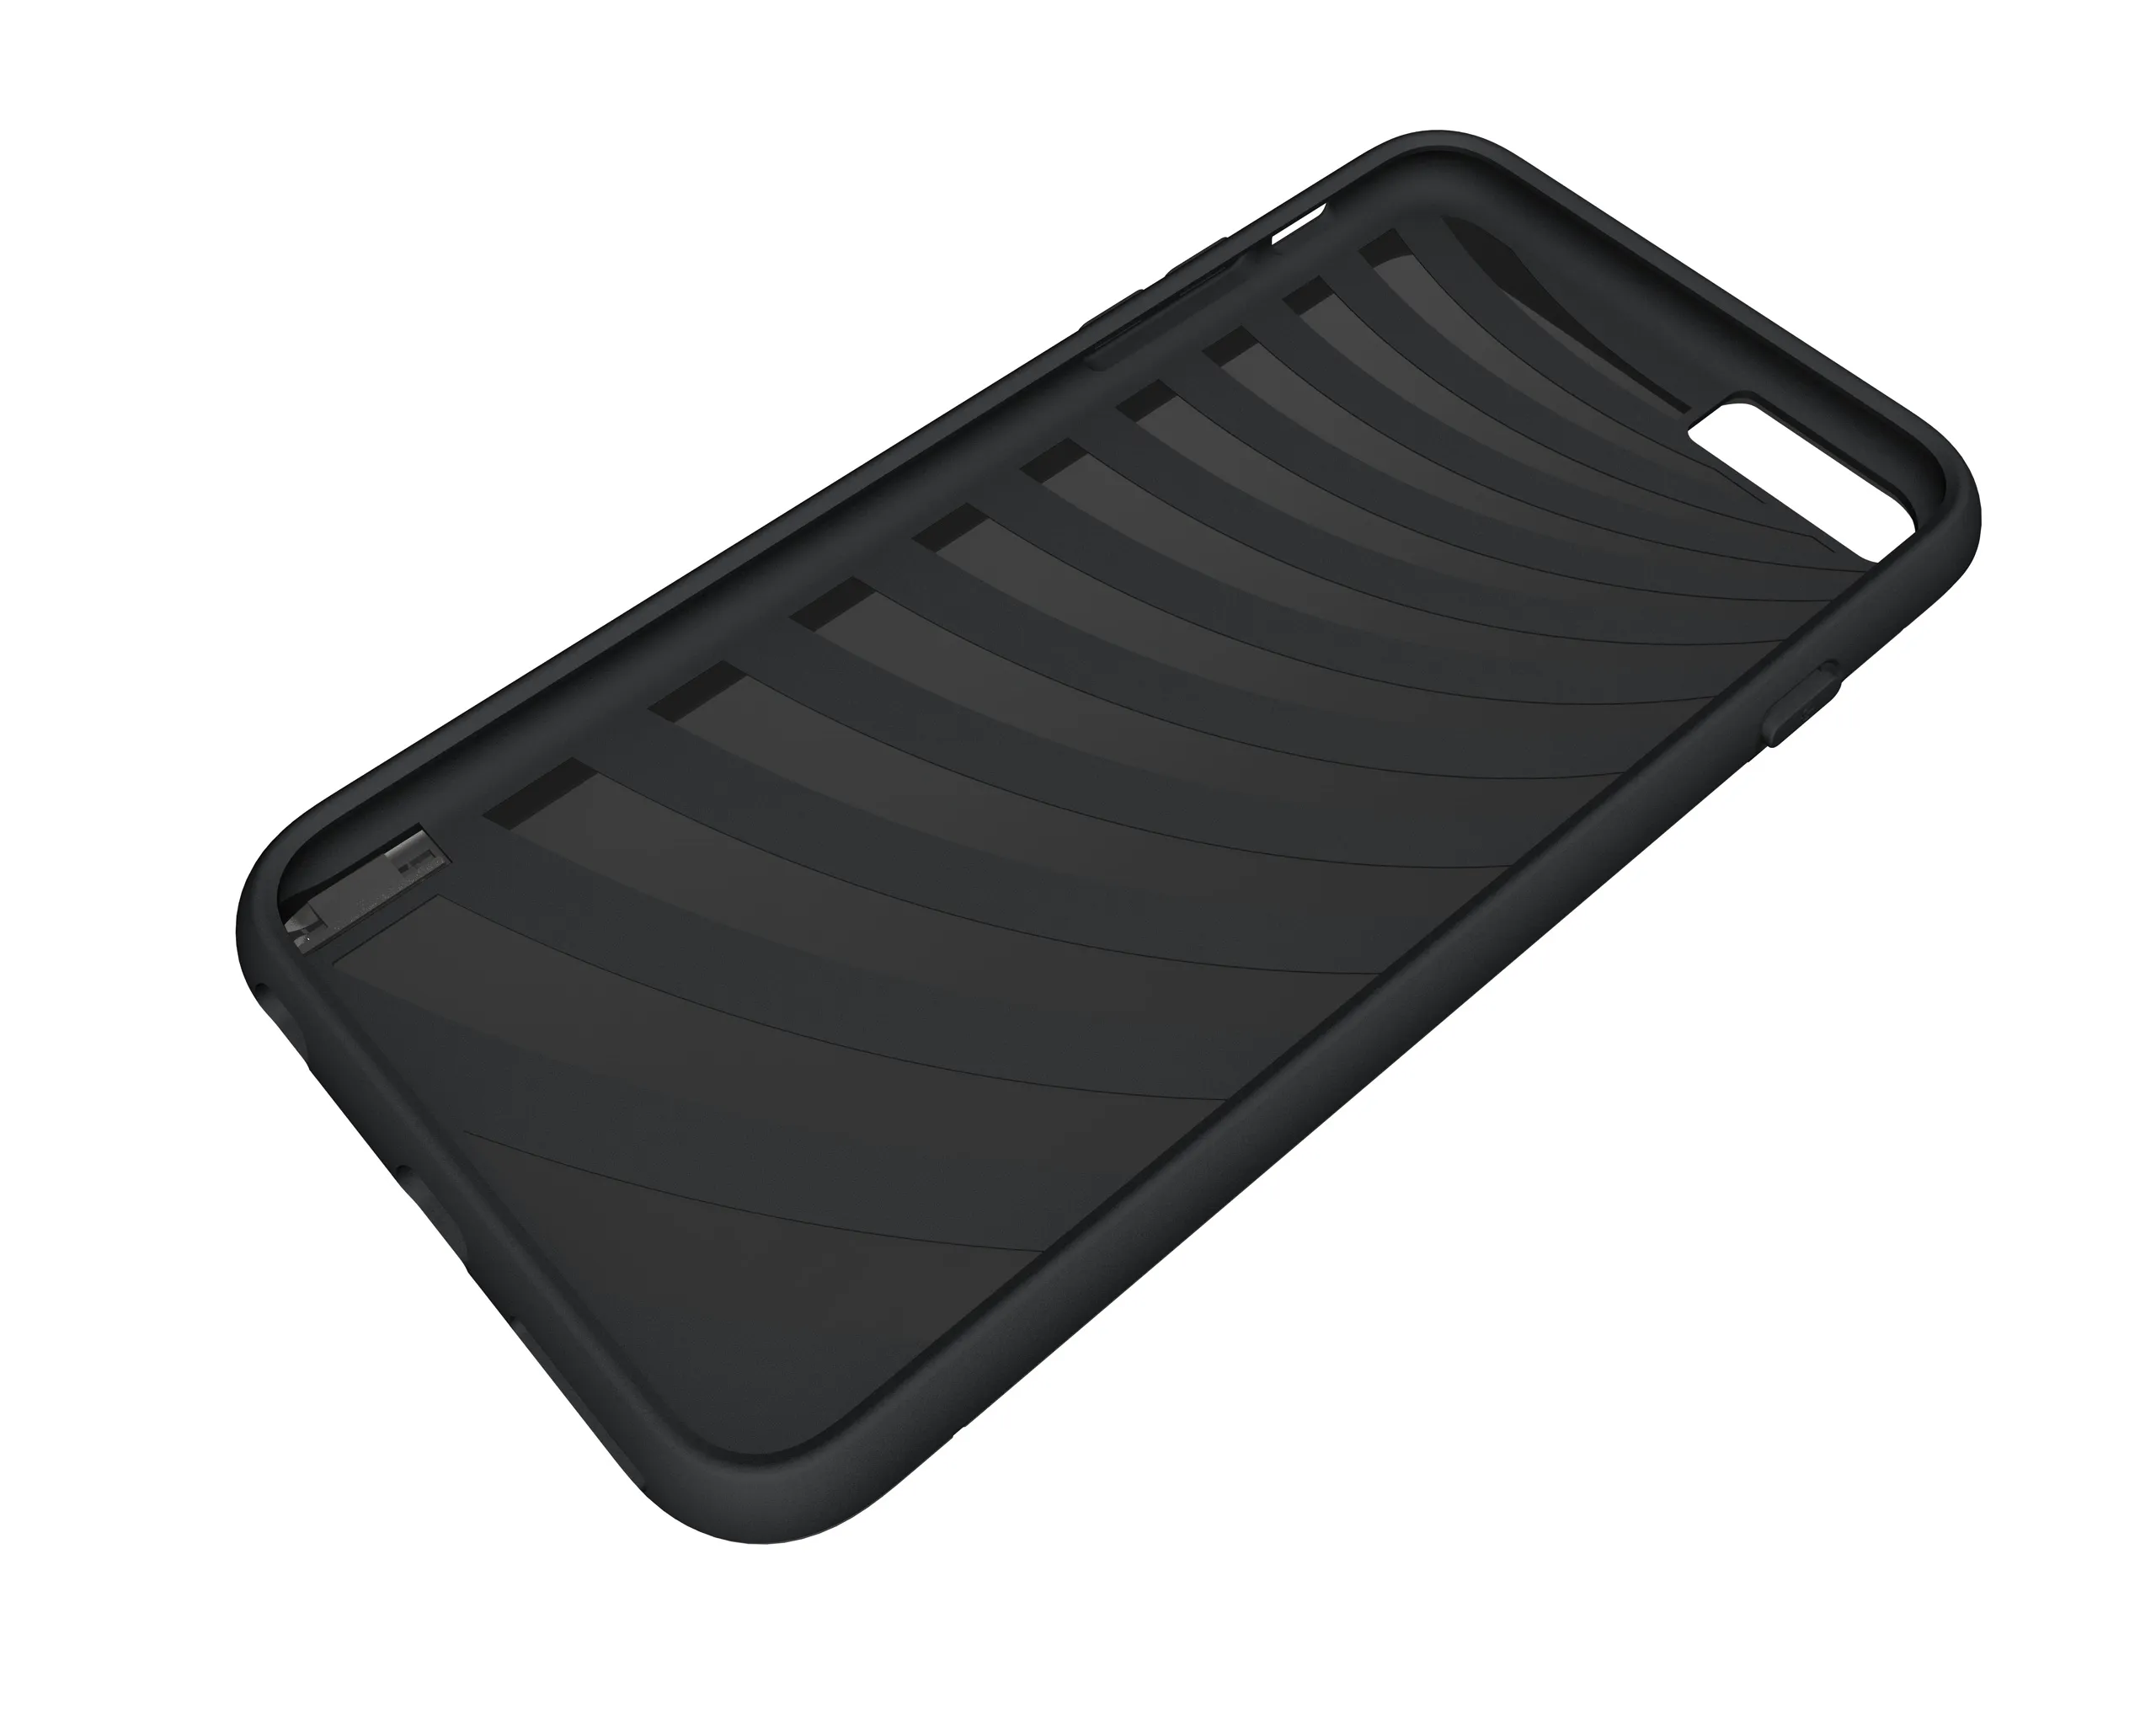 Hibrit Zırh Fırçalı Tutucu Kredi Kartı Cep Kapak Kılıf Kickstand iphone için 11 PRO 11 MAX 6 PRO 7 8 PLUS XR XS XS MAX / 